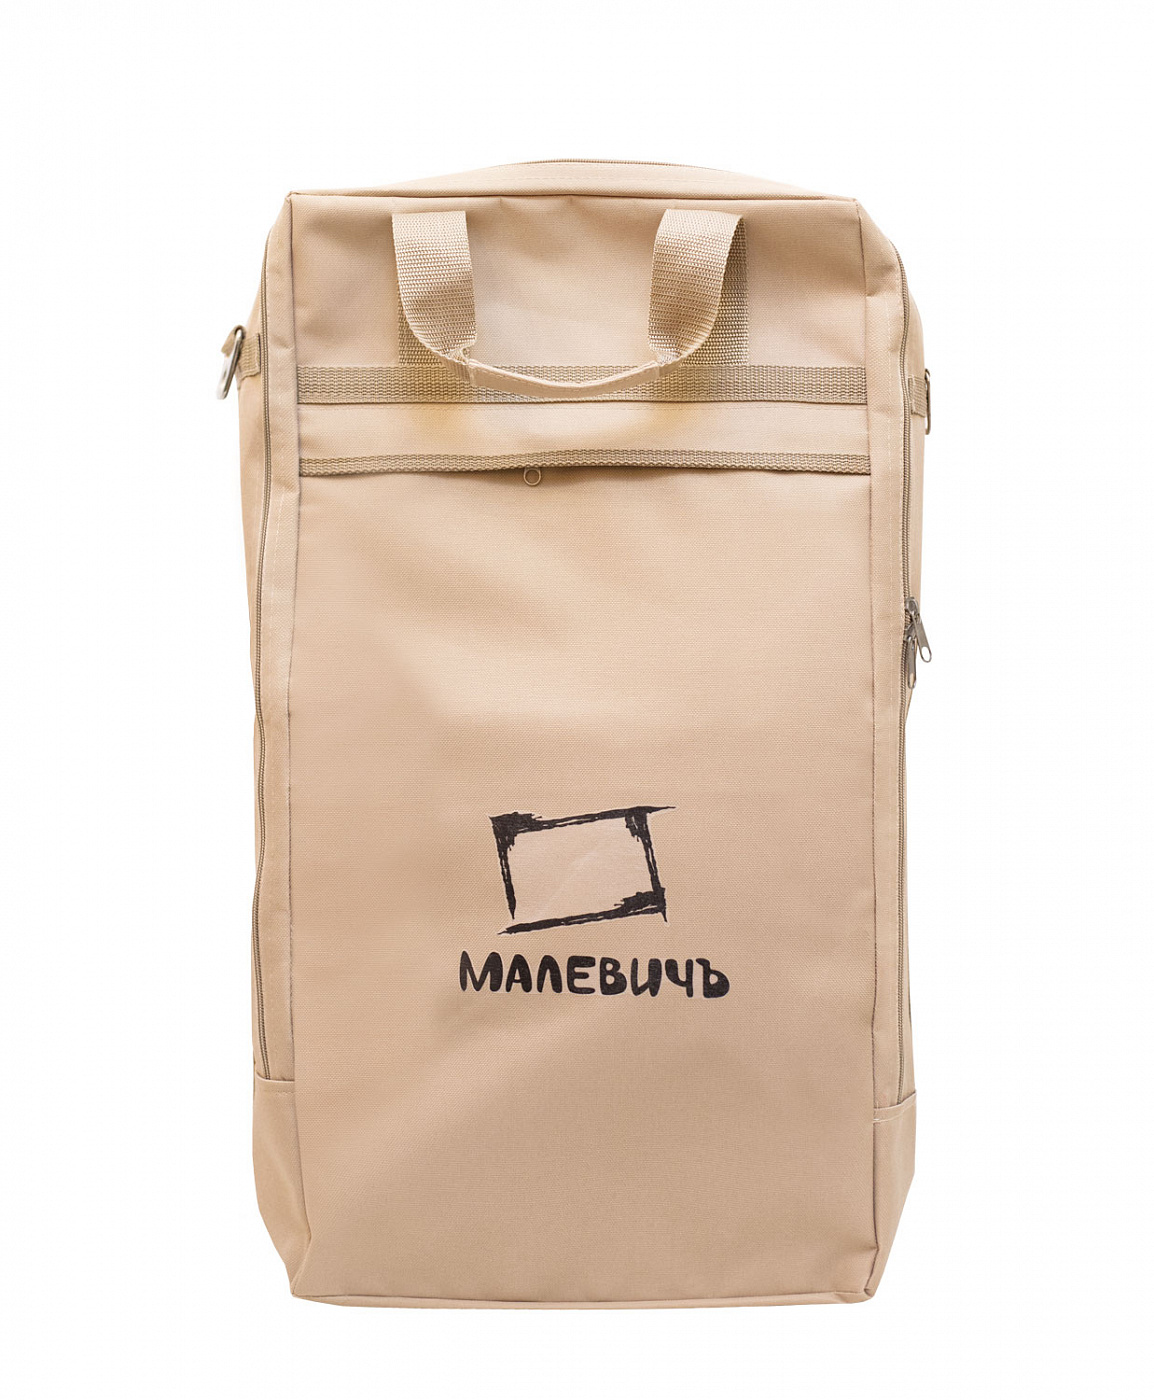 Сумка для этюдника Малевичъ МЛ-15, бежевая сумка never give up бежевая текстиль 40х32 ск2021 107